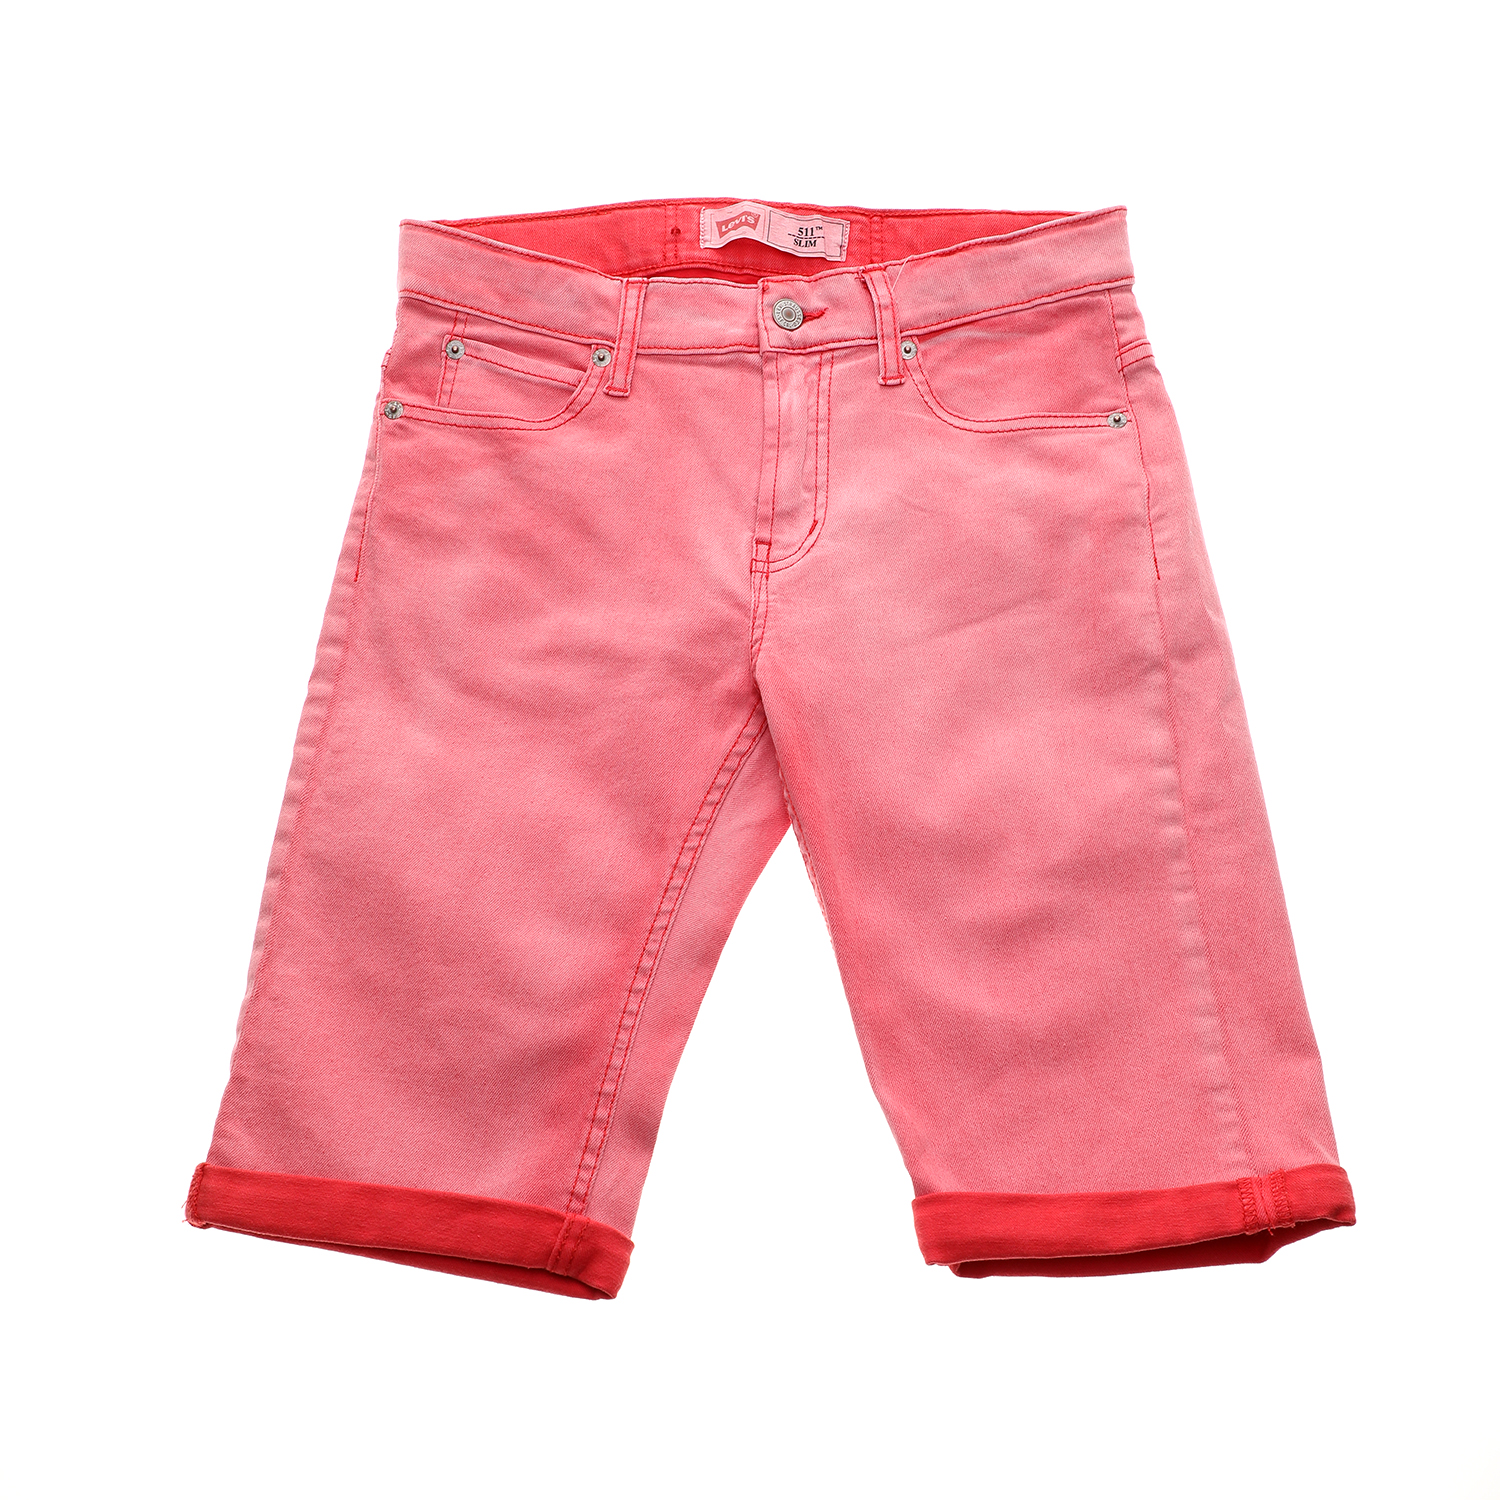 Παιδικά/Boys/Ρούχα/Σορτς-Βερμούδες LEVIS KID'S - Παιδική βερμούδα LEVI'S 511 FLA κόκκινη